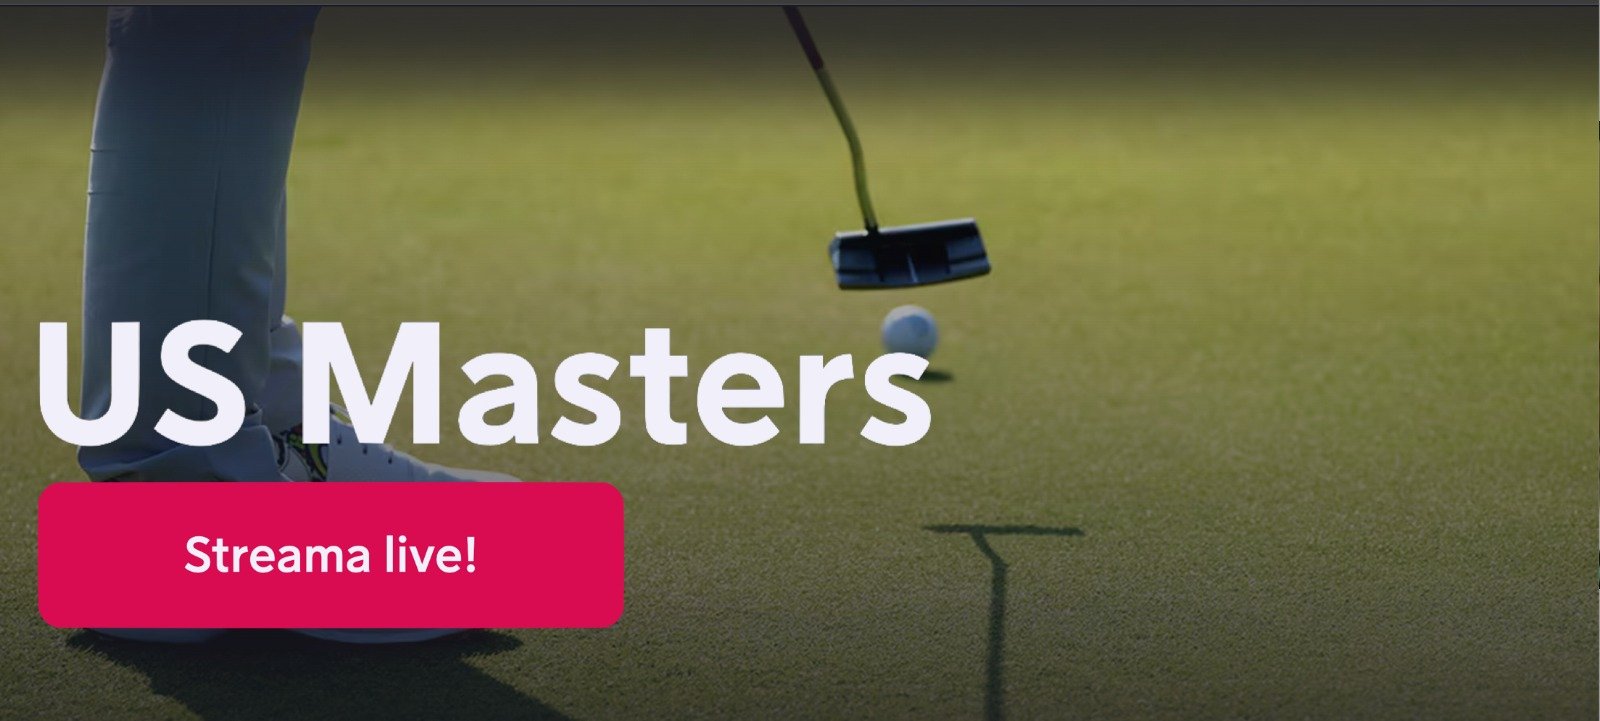 Vem vann US Masters 2024? Resultat US Masters vinnare i golf 2024!